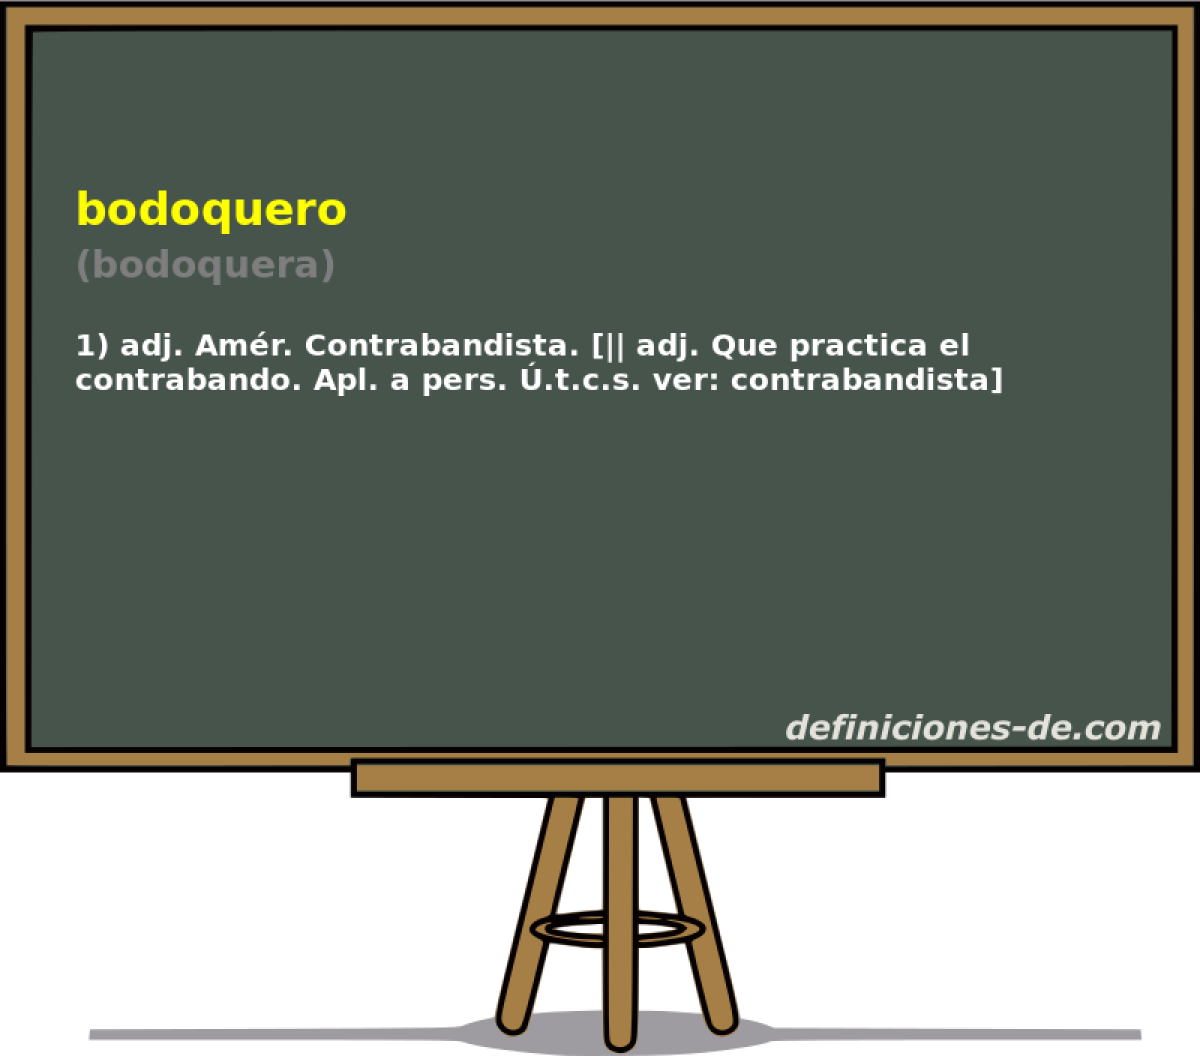 bodoquero (bodoquera)